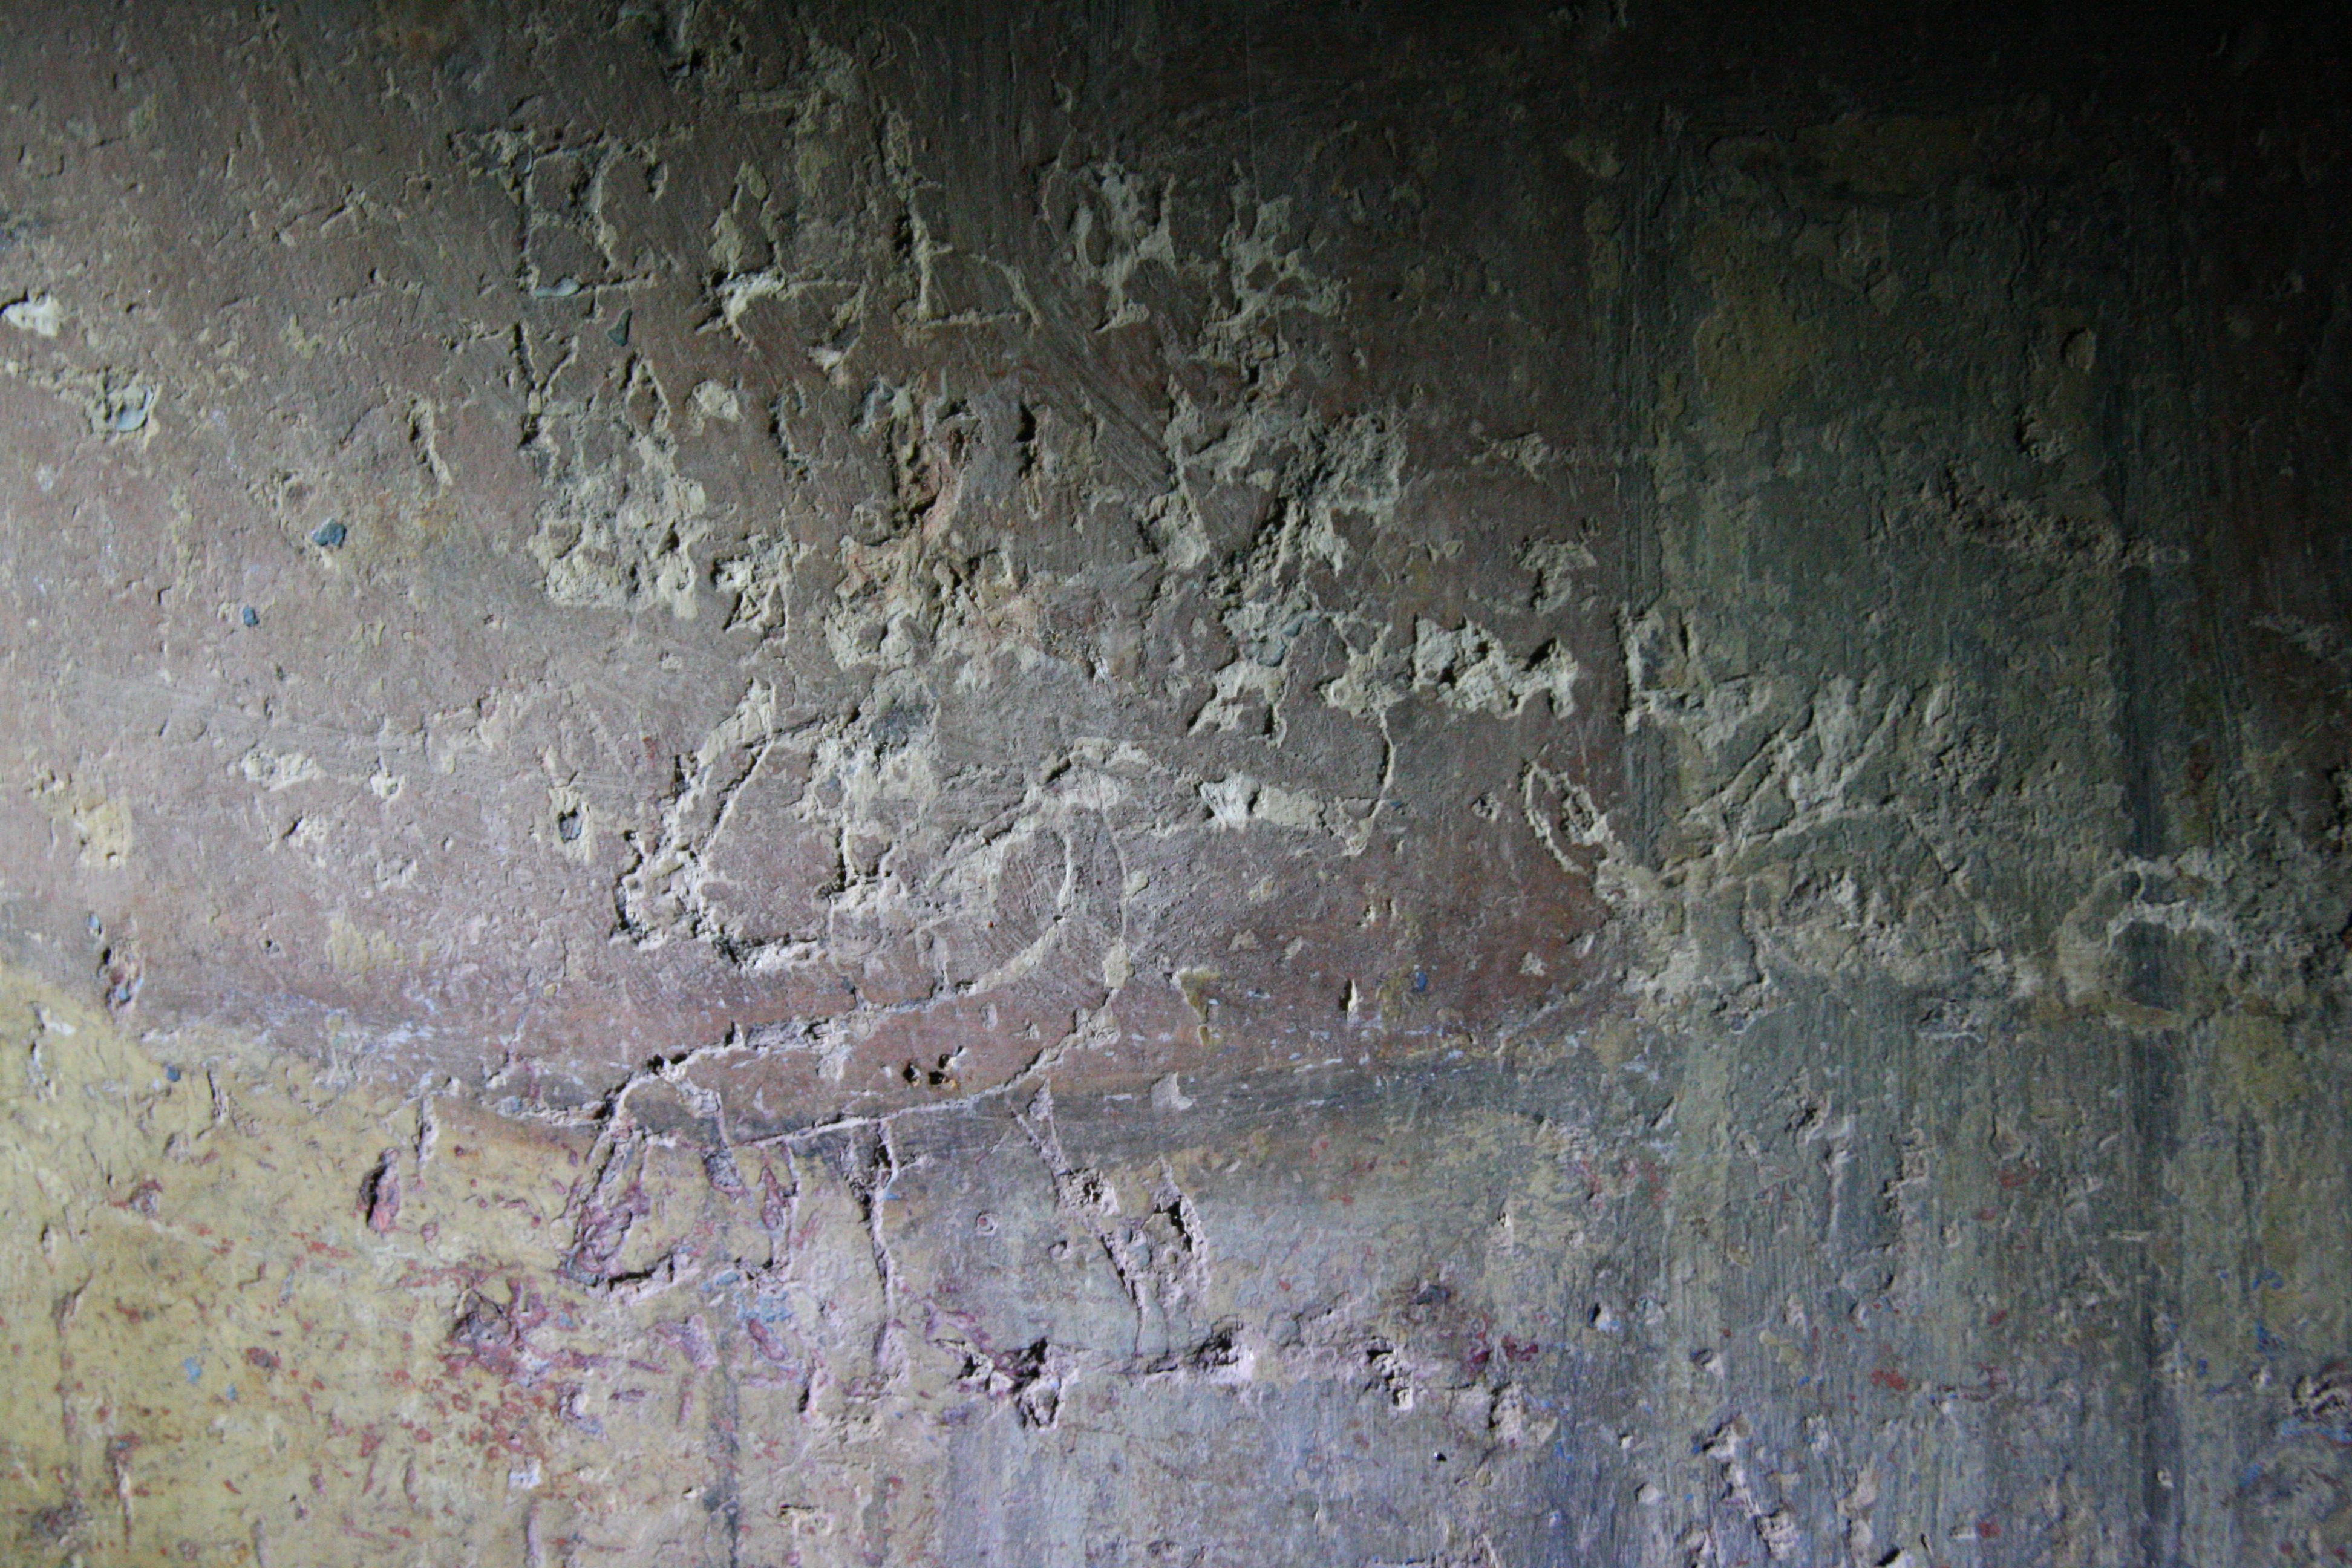 У вівтарній частині є графіті з Георгієм Переможцем, який бореться зі змієм